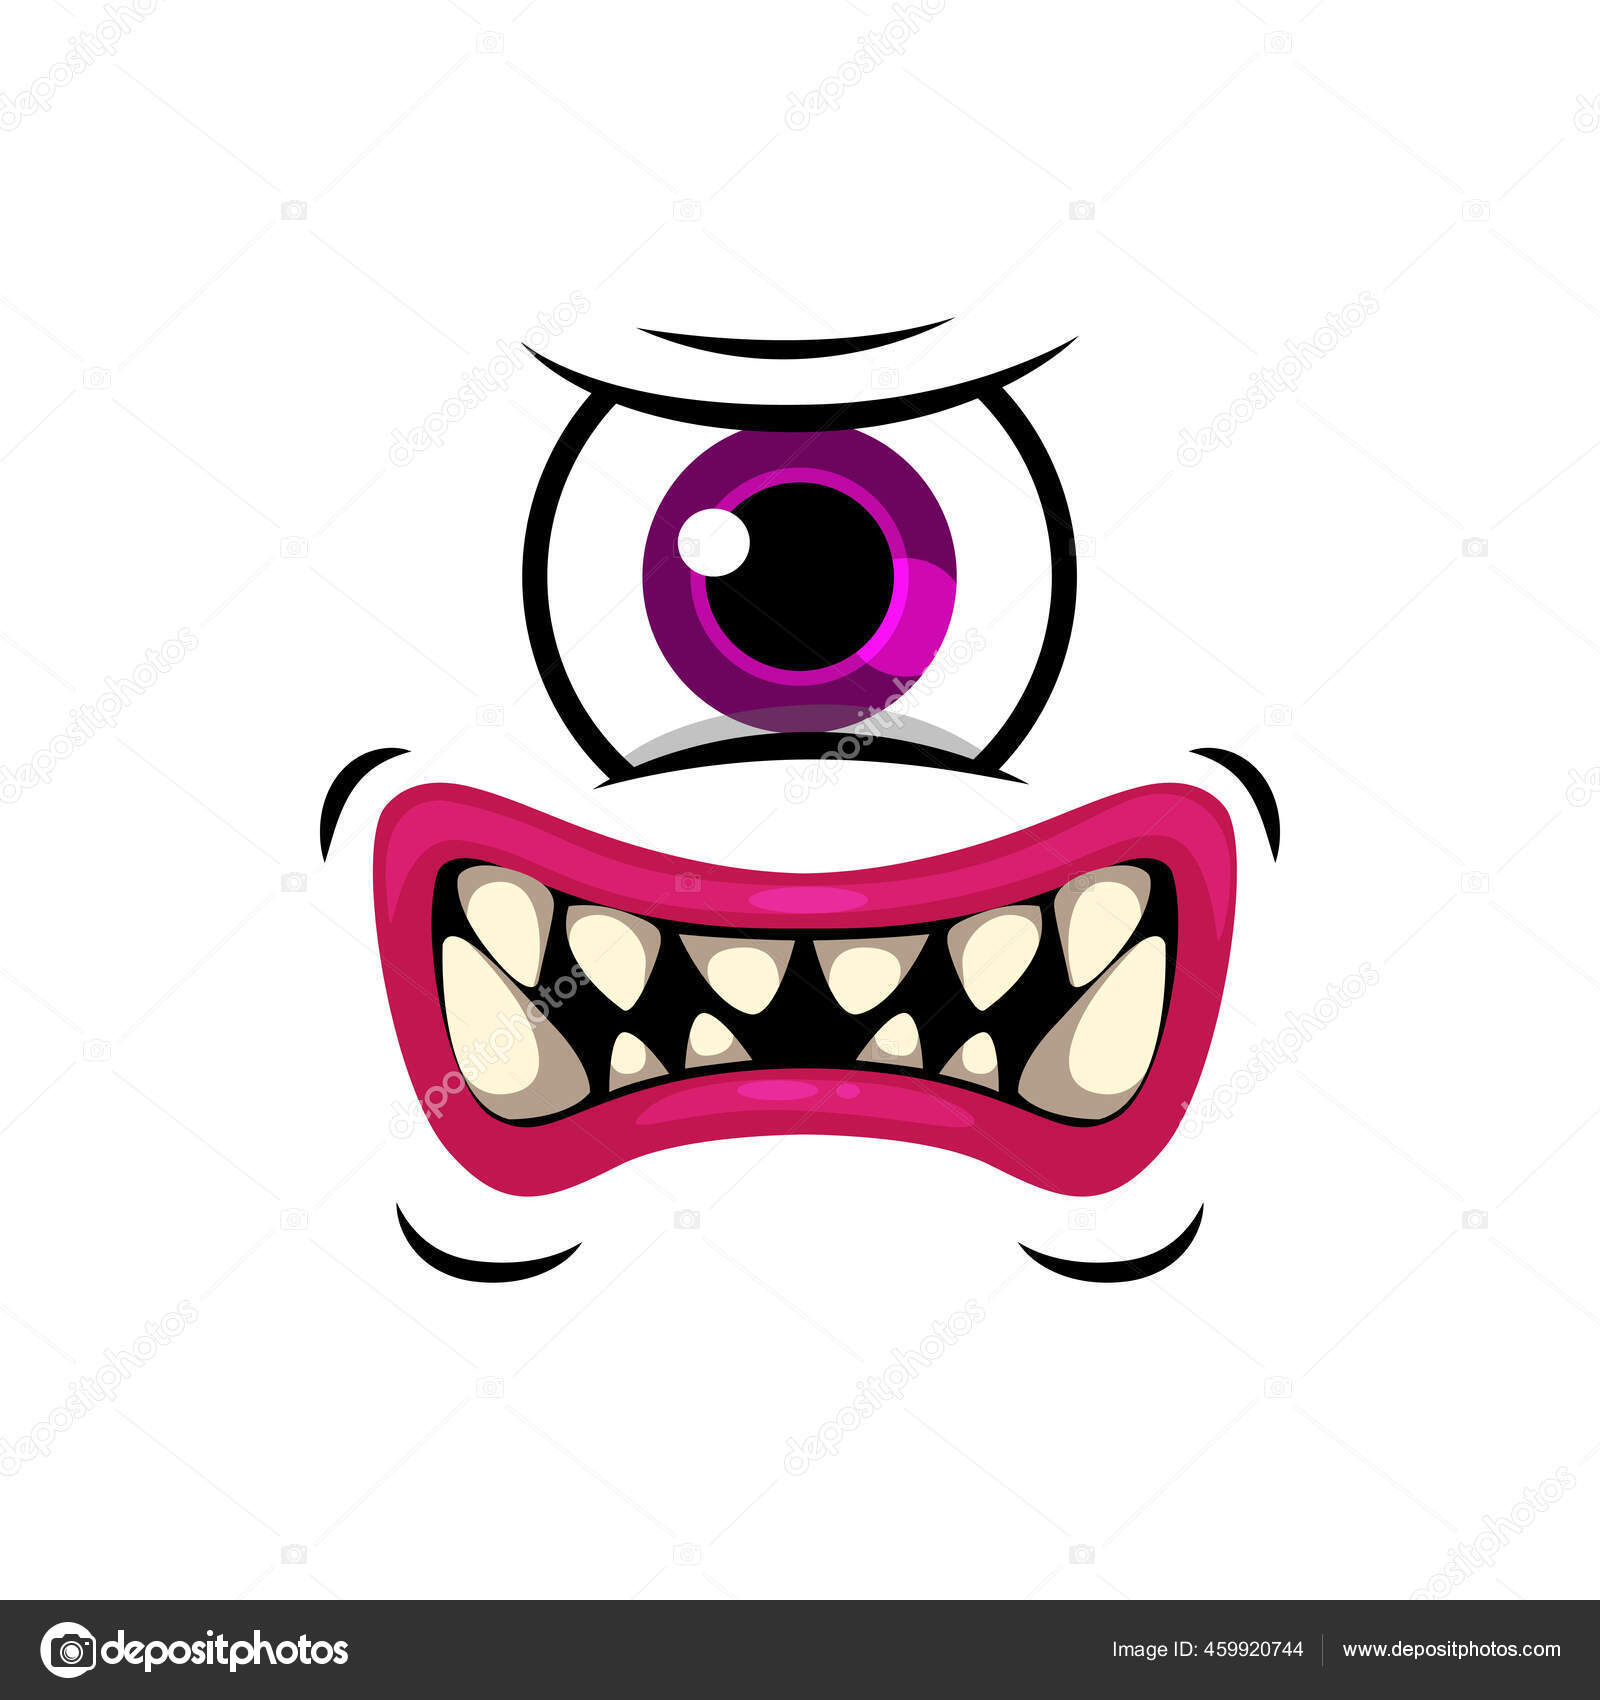 Cara Monstro Desenho Animado Irritado Ilustração Assustadora Mítica  Expressão Alienígena imagem vetorial de drawkman.gmail.com© 652727148